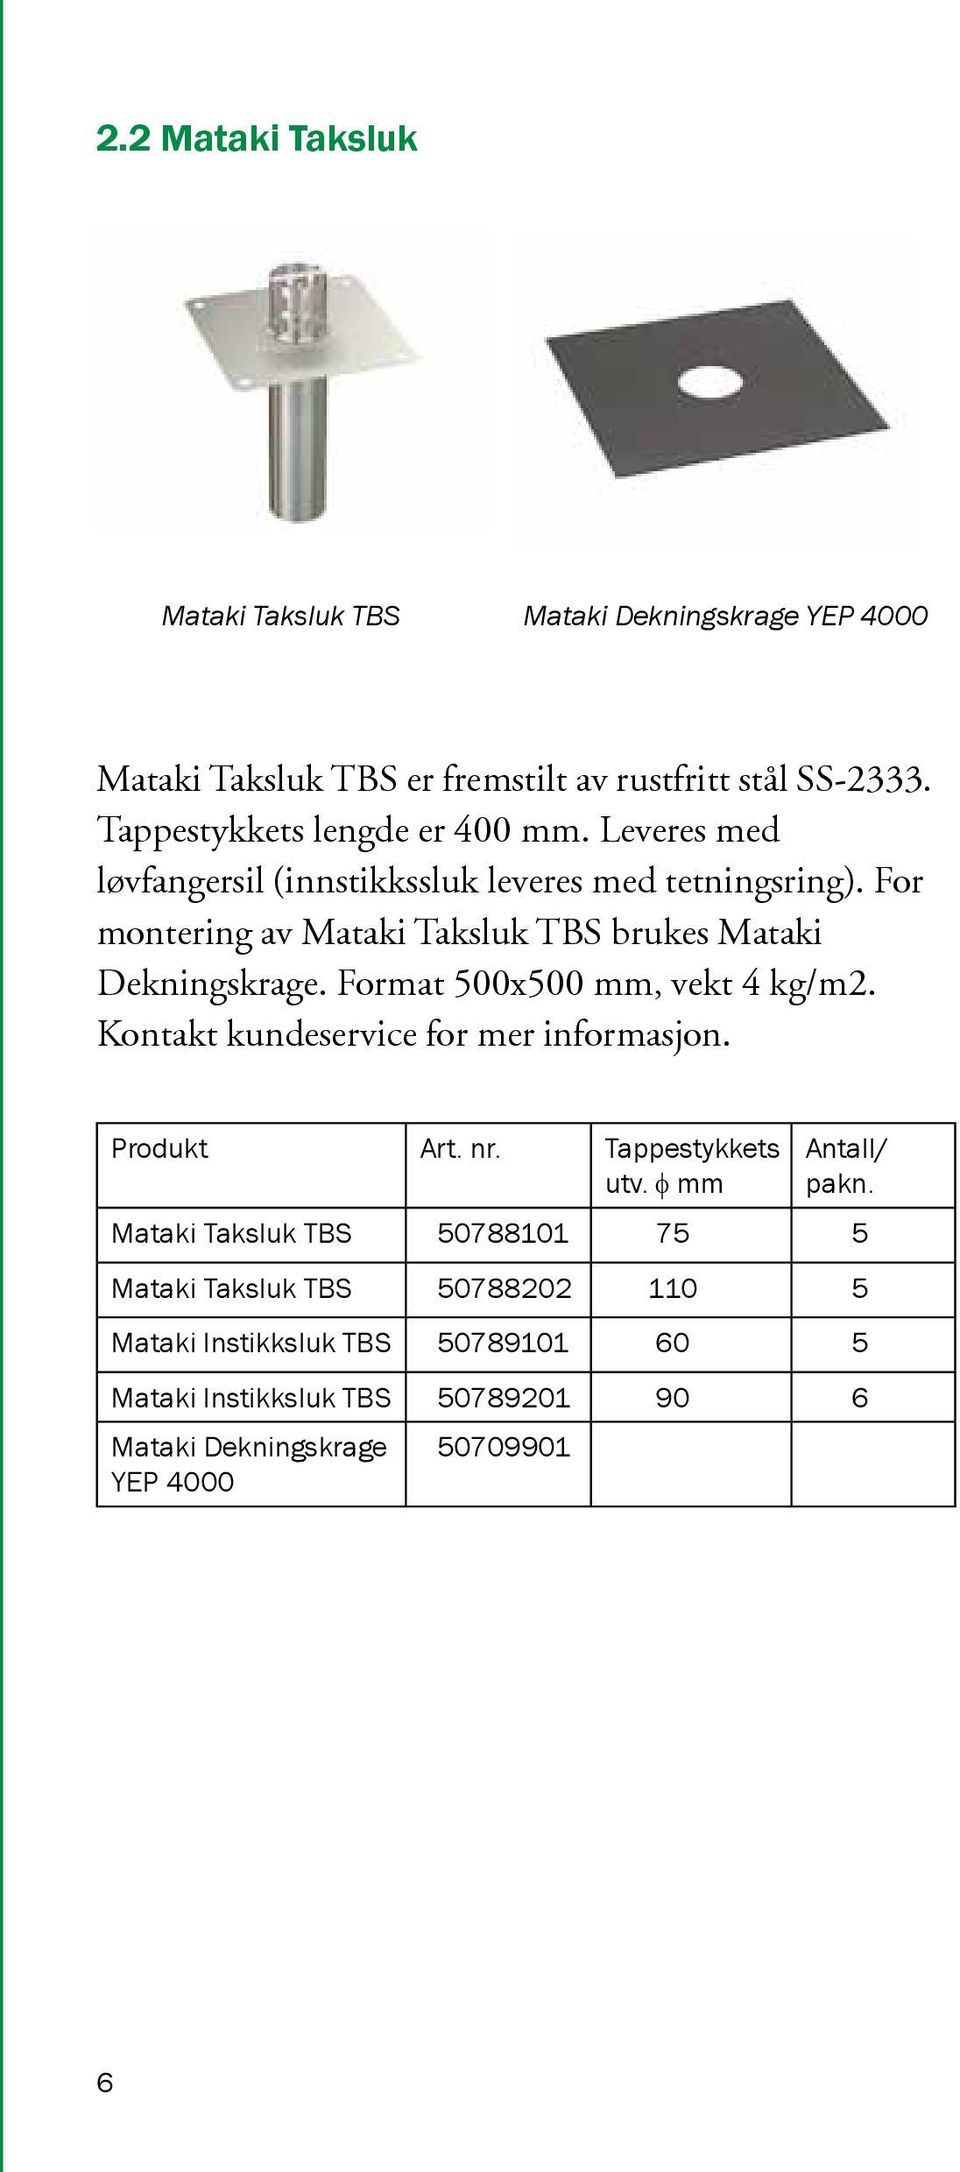 For montering av Mataki Taksluk TBS brukes Mataki Dekningskrage. Format 500x500 mm, vekt 4 kg/m2. Kontakt kundeservice for mer informasjon.